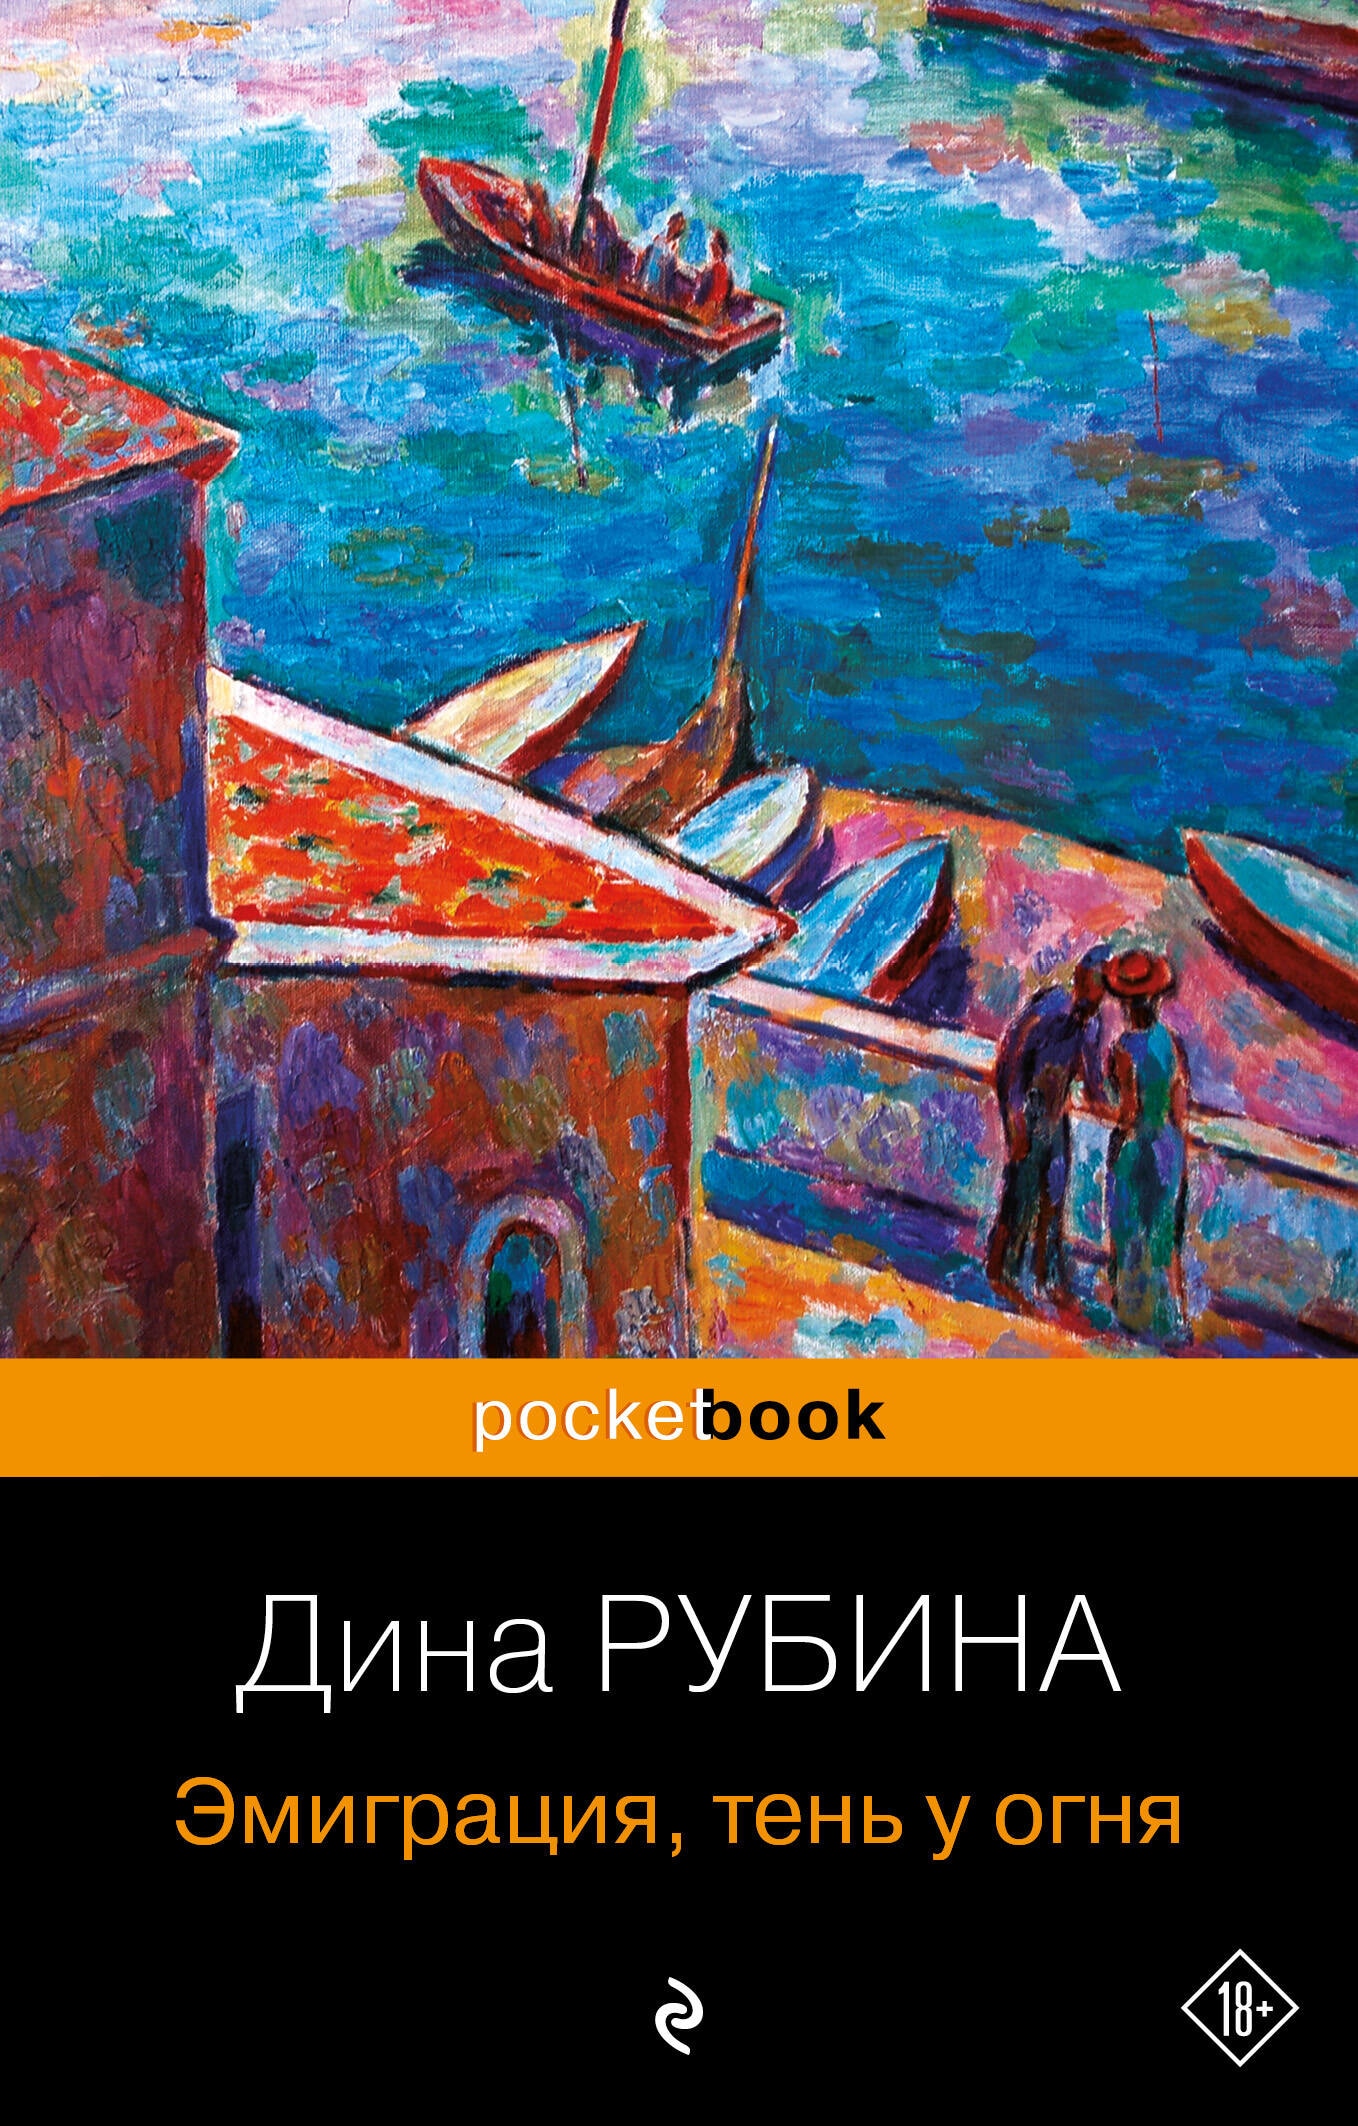 Book “Эмиграция, тень у огня” by Дина Рубина — 2023